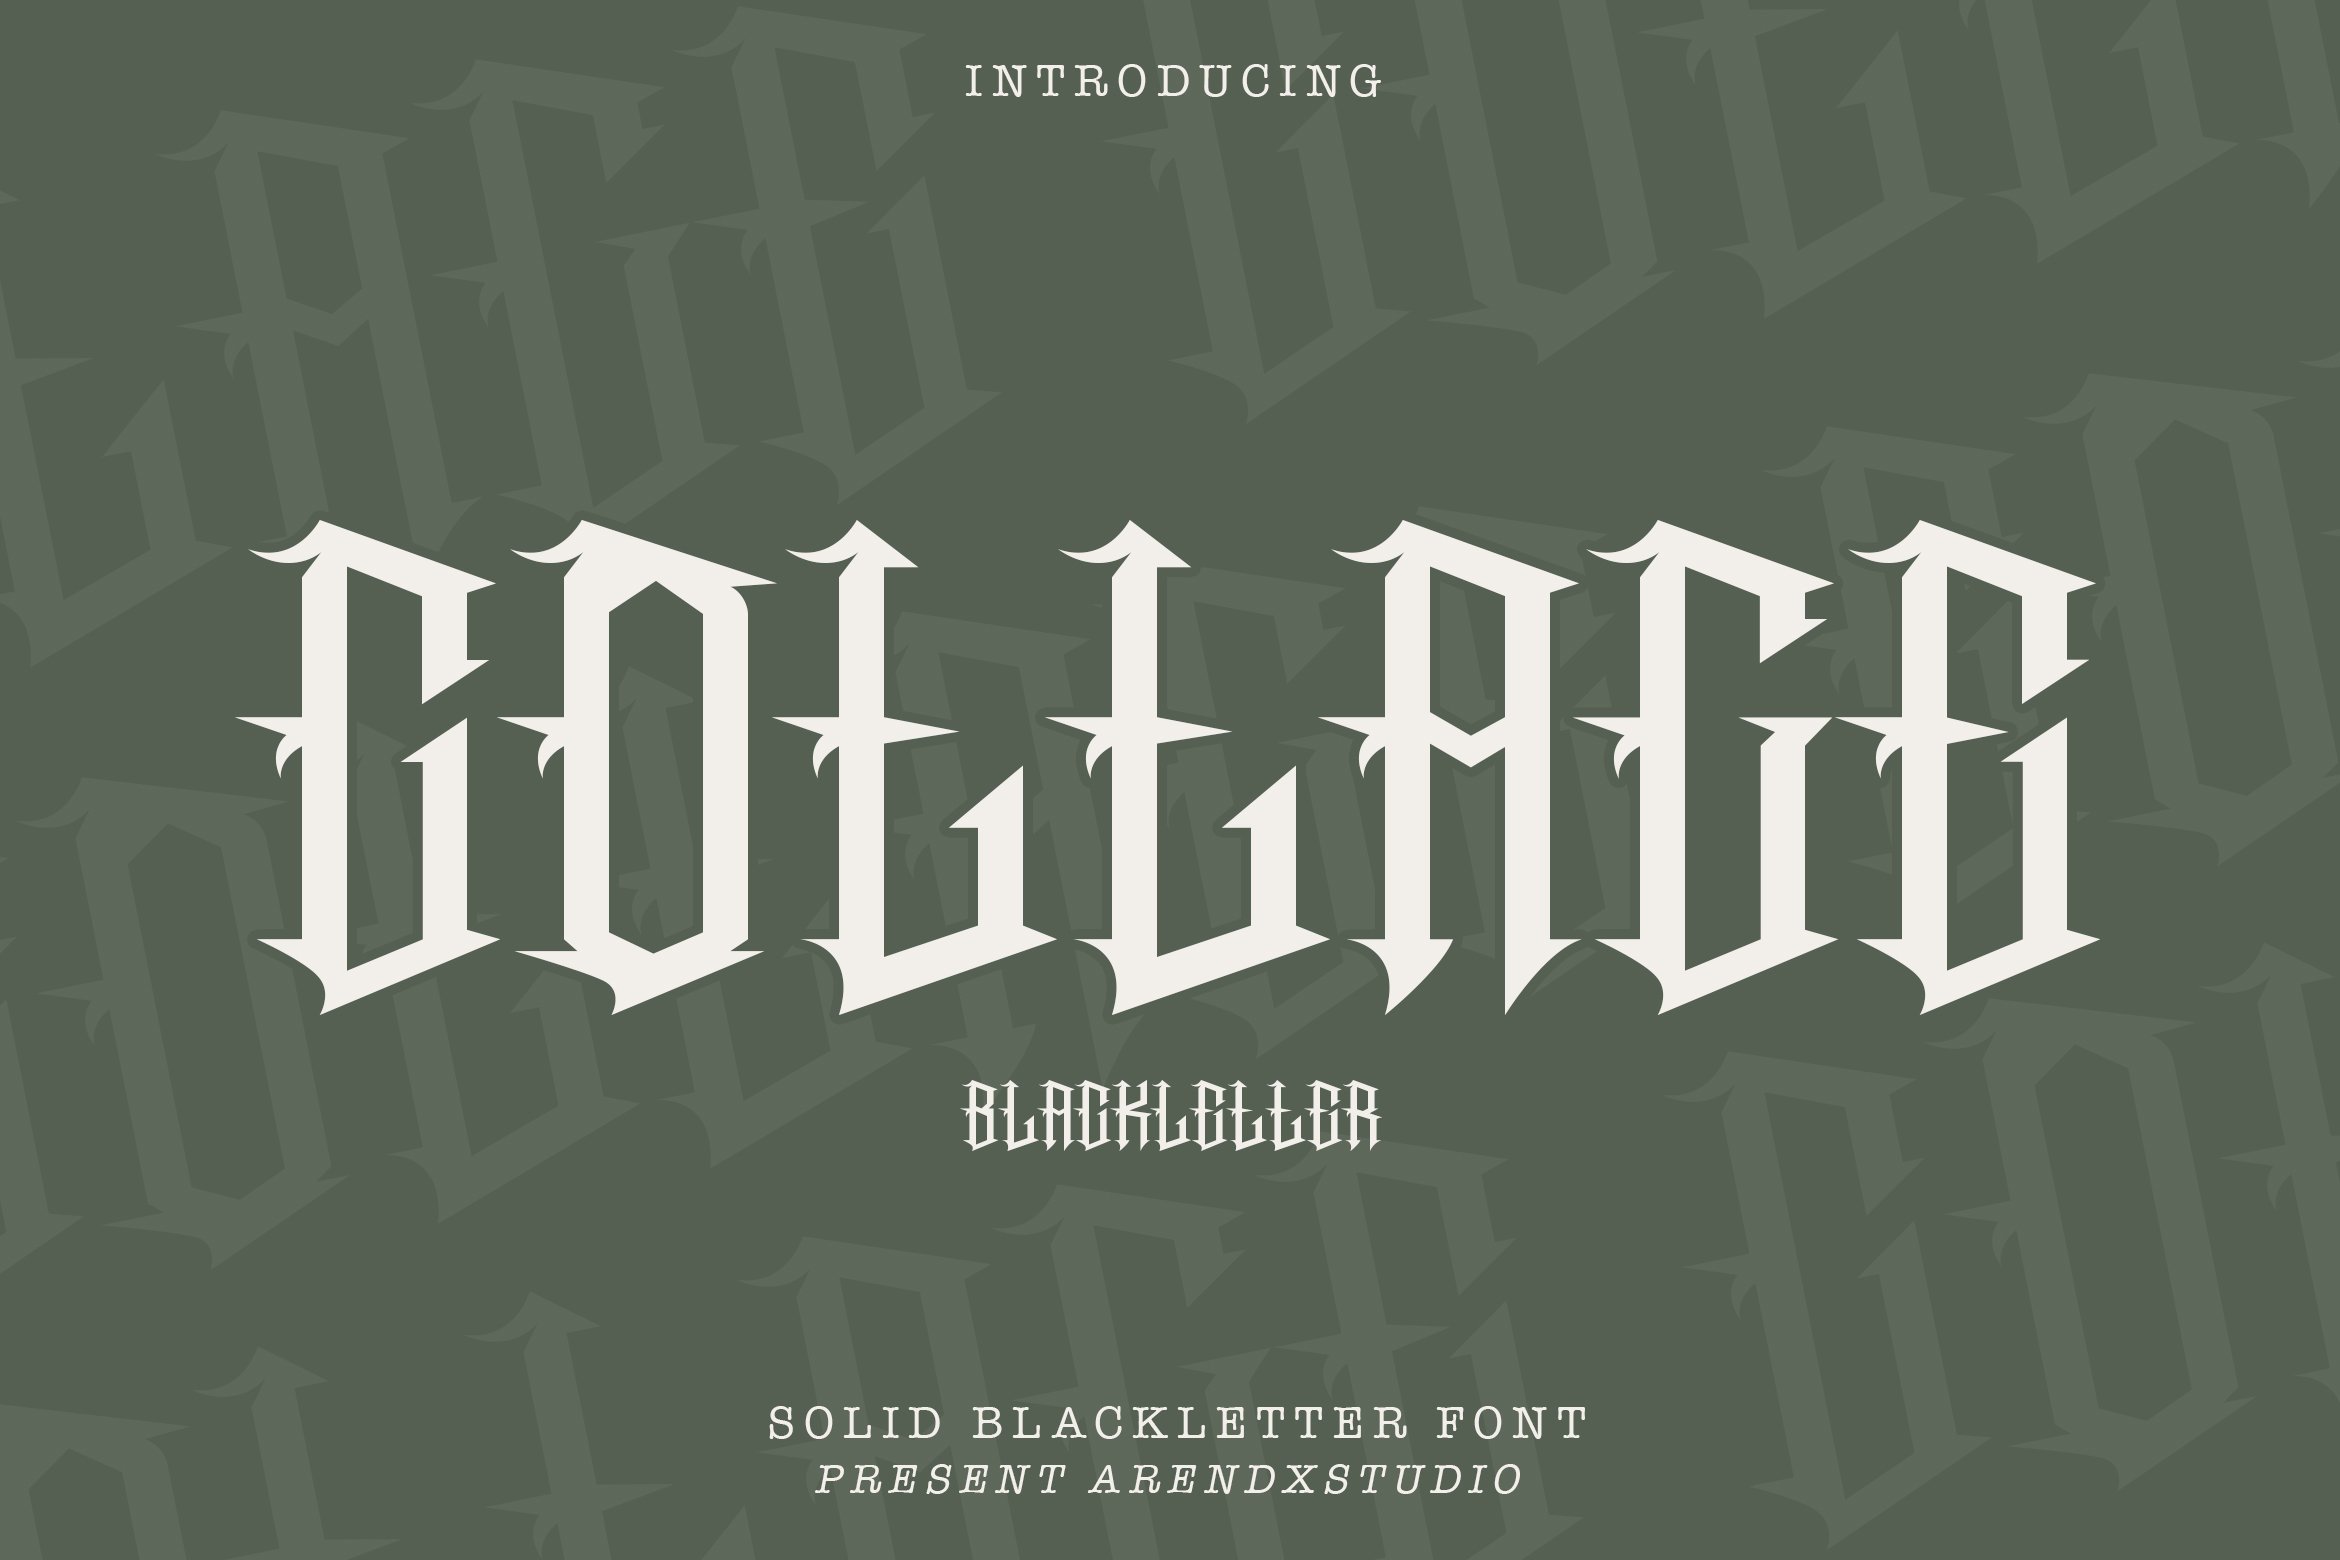 Cottage - Blackletter Font cover image.